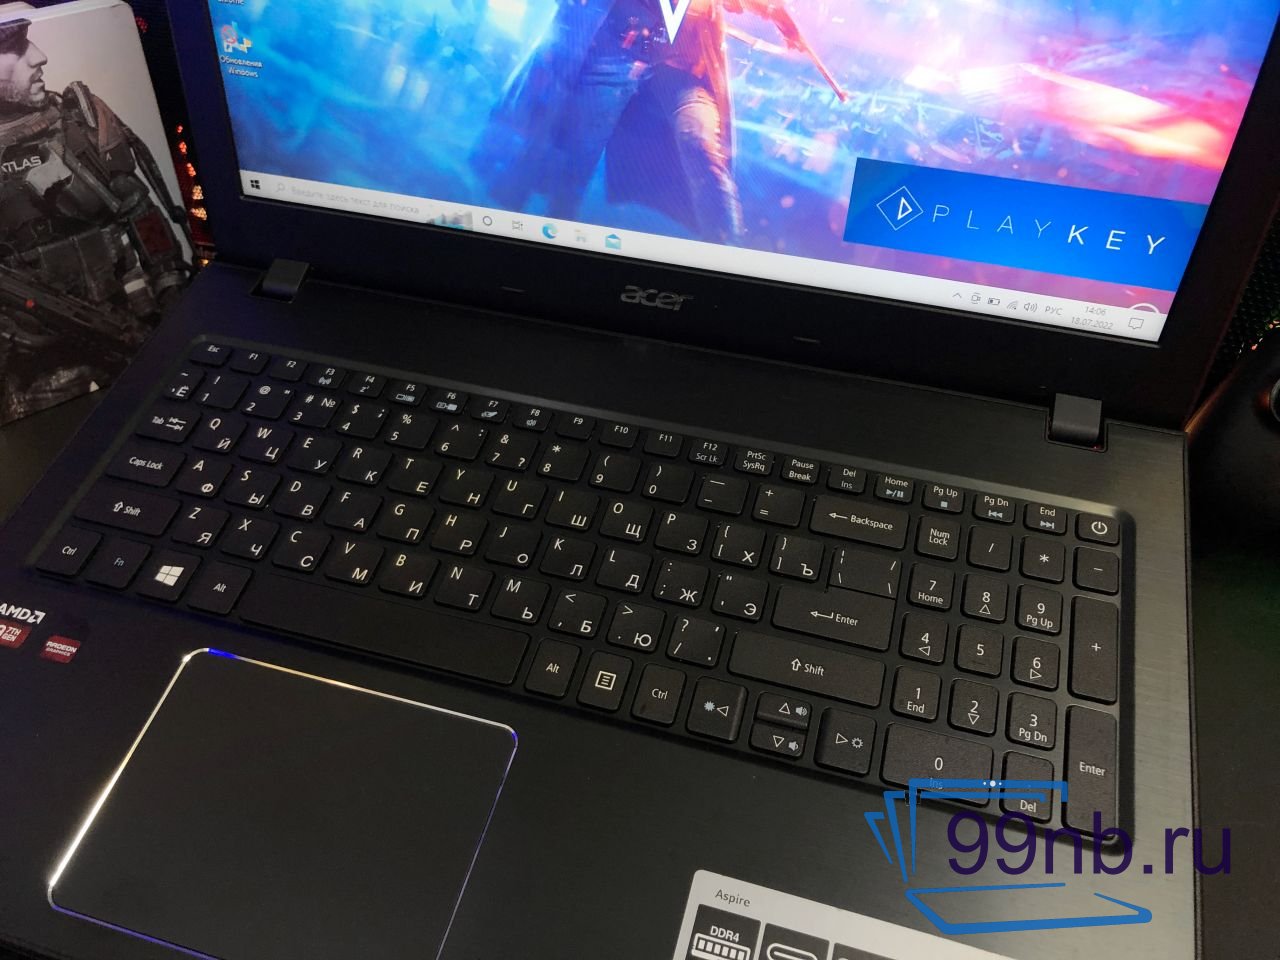  Ноутбук Acer Aspire для облачного гейминга + SSD